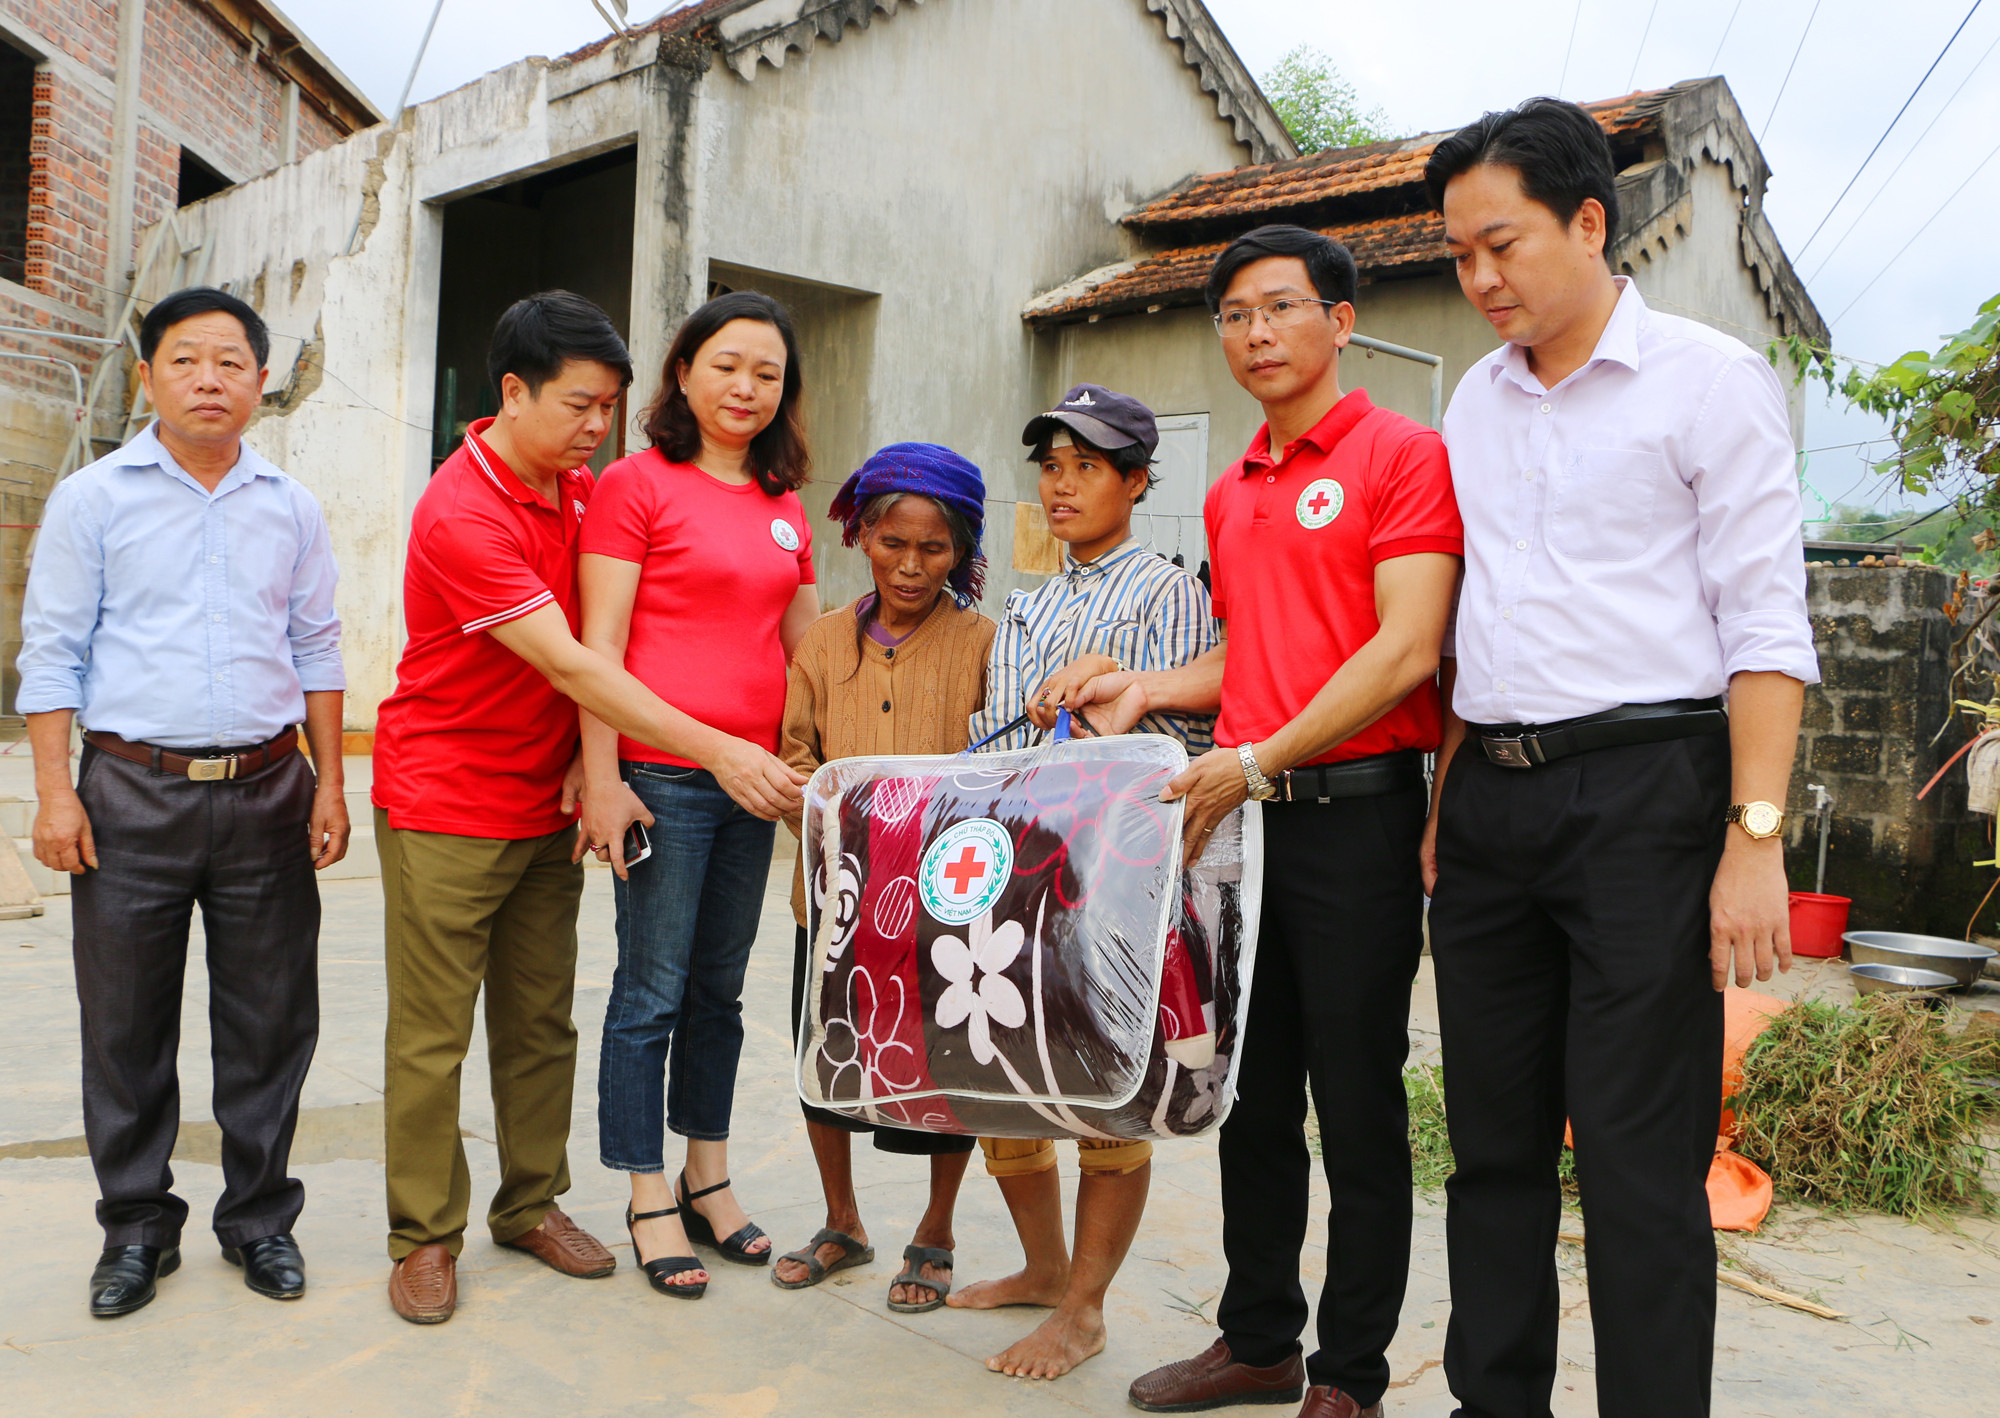 Thăm và trao quà cho bà Nguyễn Thị Lâm là một hộ giáo dân nghèo ở xosm3, bà là 1 trong số 14 hộ giáo dân nghèo hoặc bị bệnh hiểm nghèo ở Kỳ Tân được trao quà nhân lễ Giáng sinh. Ảnh: Nguyễn Hải